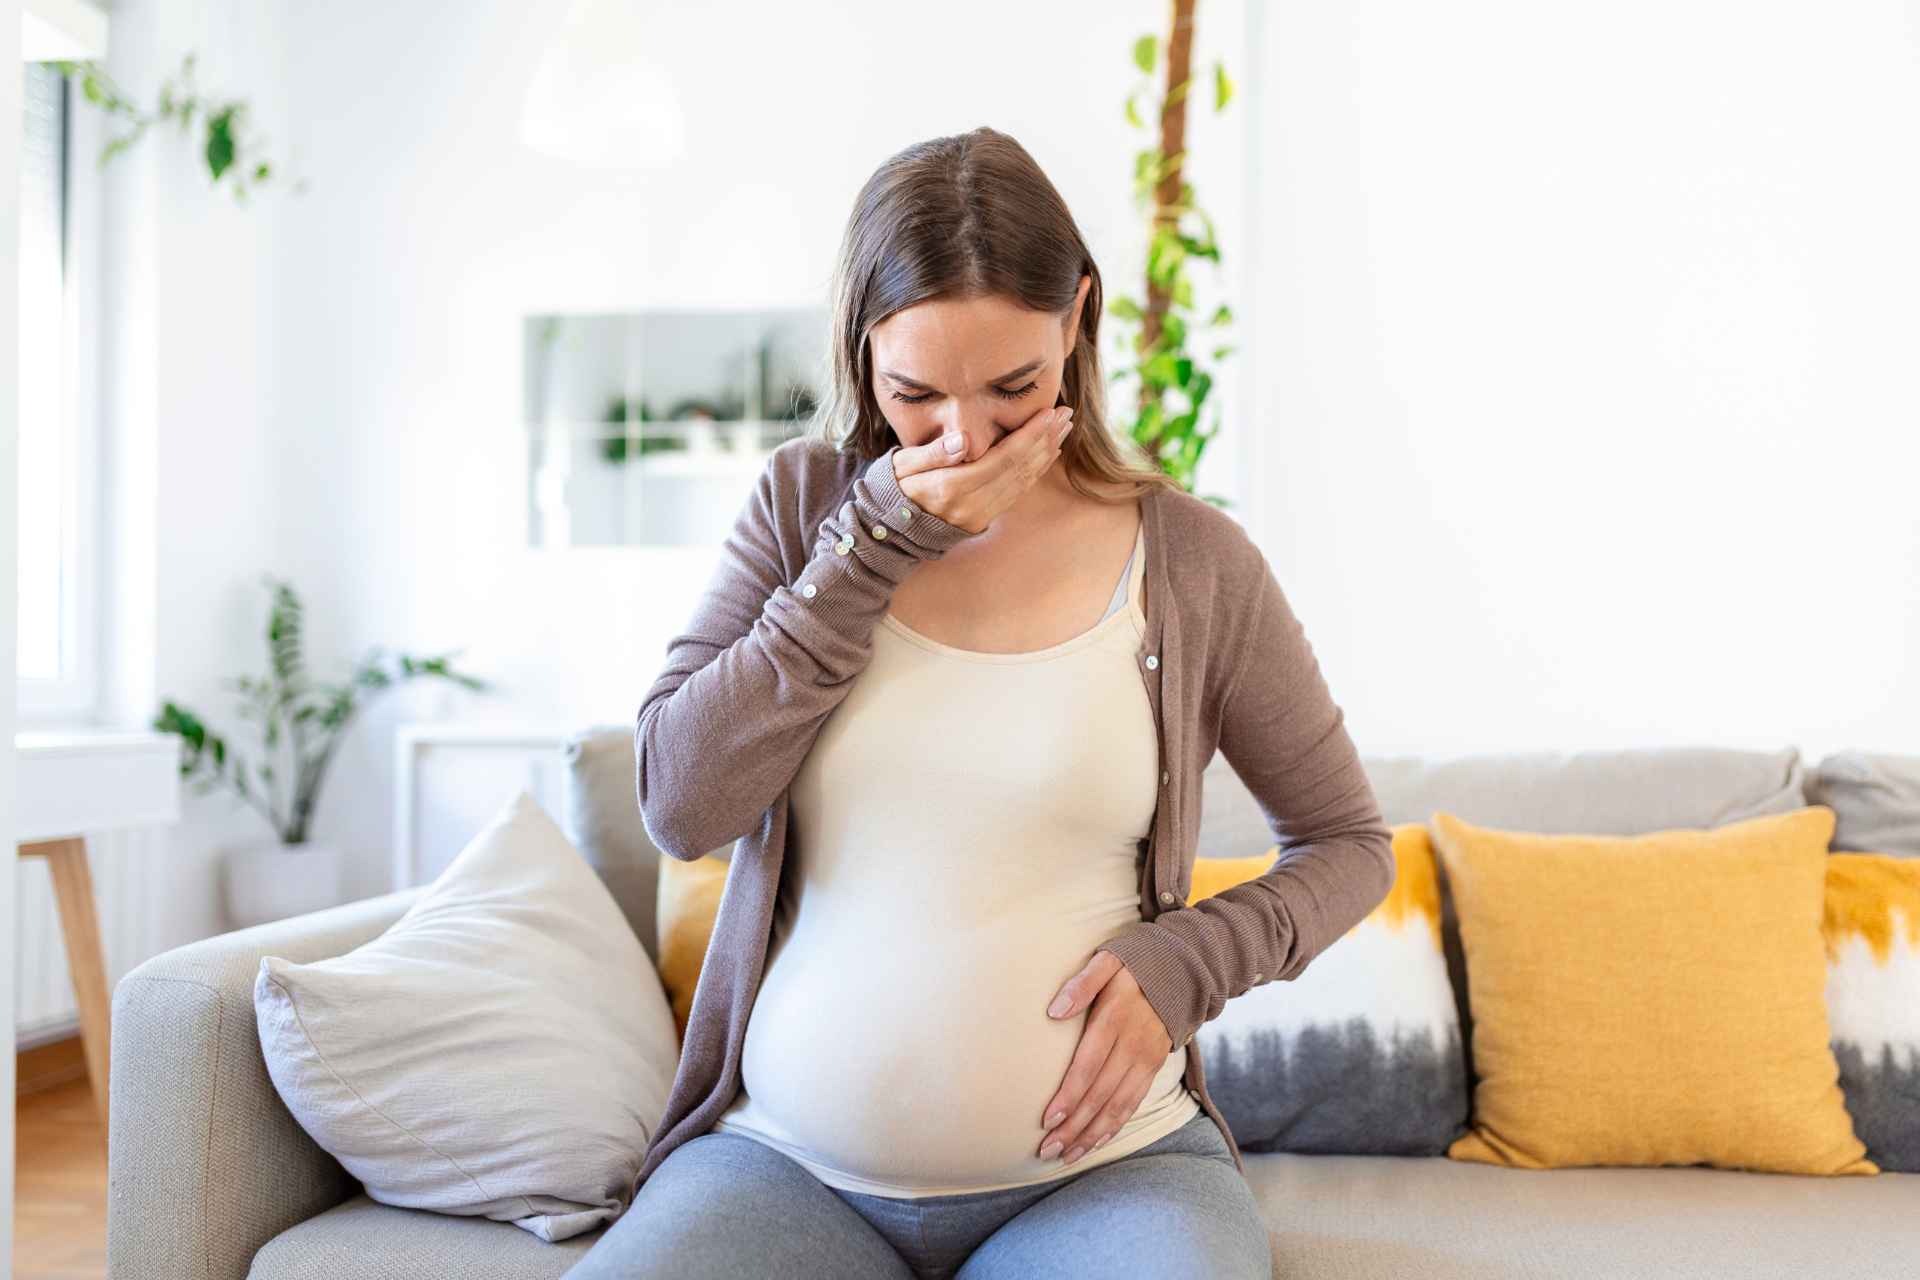 Nausea e vomito in gravidanza non sono “normali”: ecco cosa fare